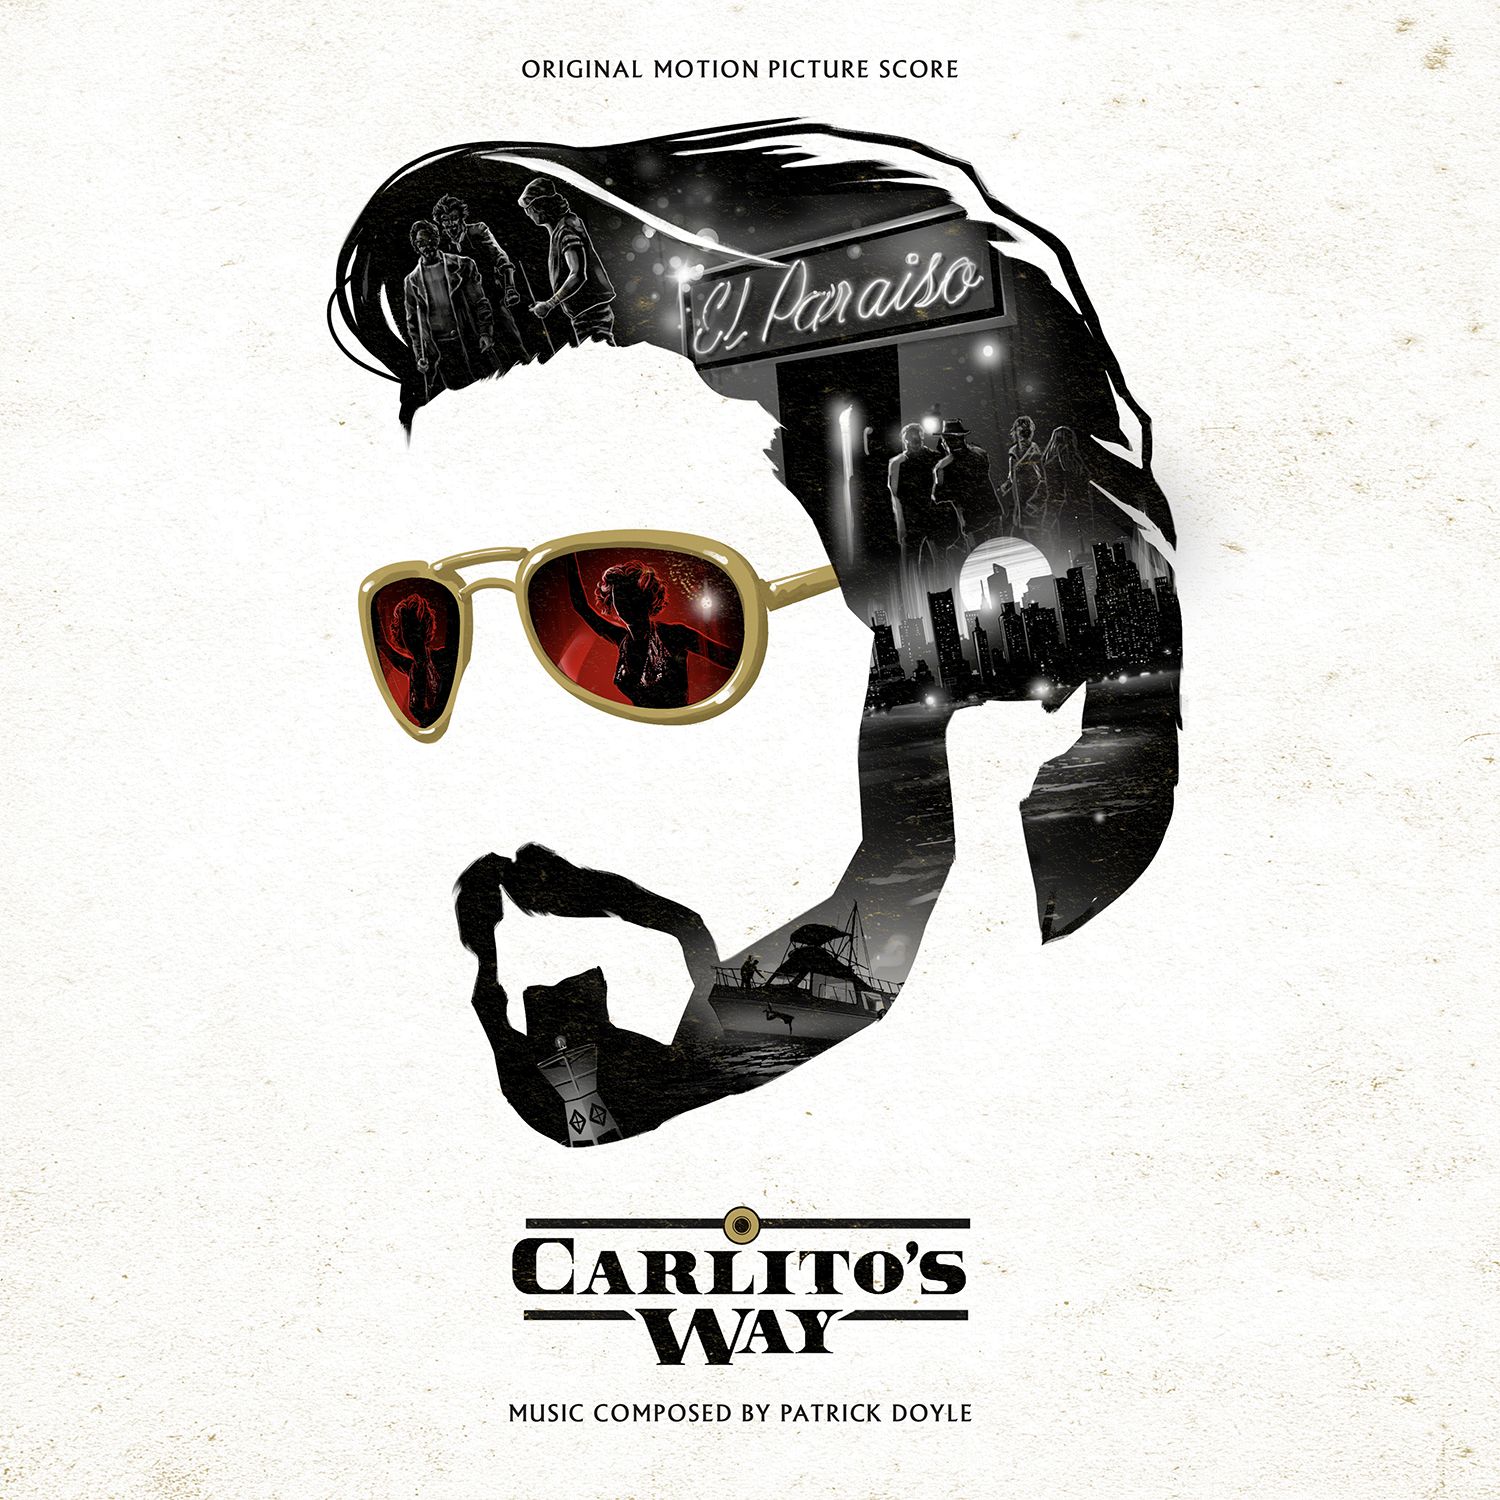 Carlito's Way soundtrack vinyl